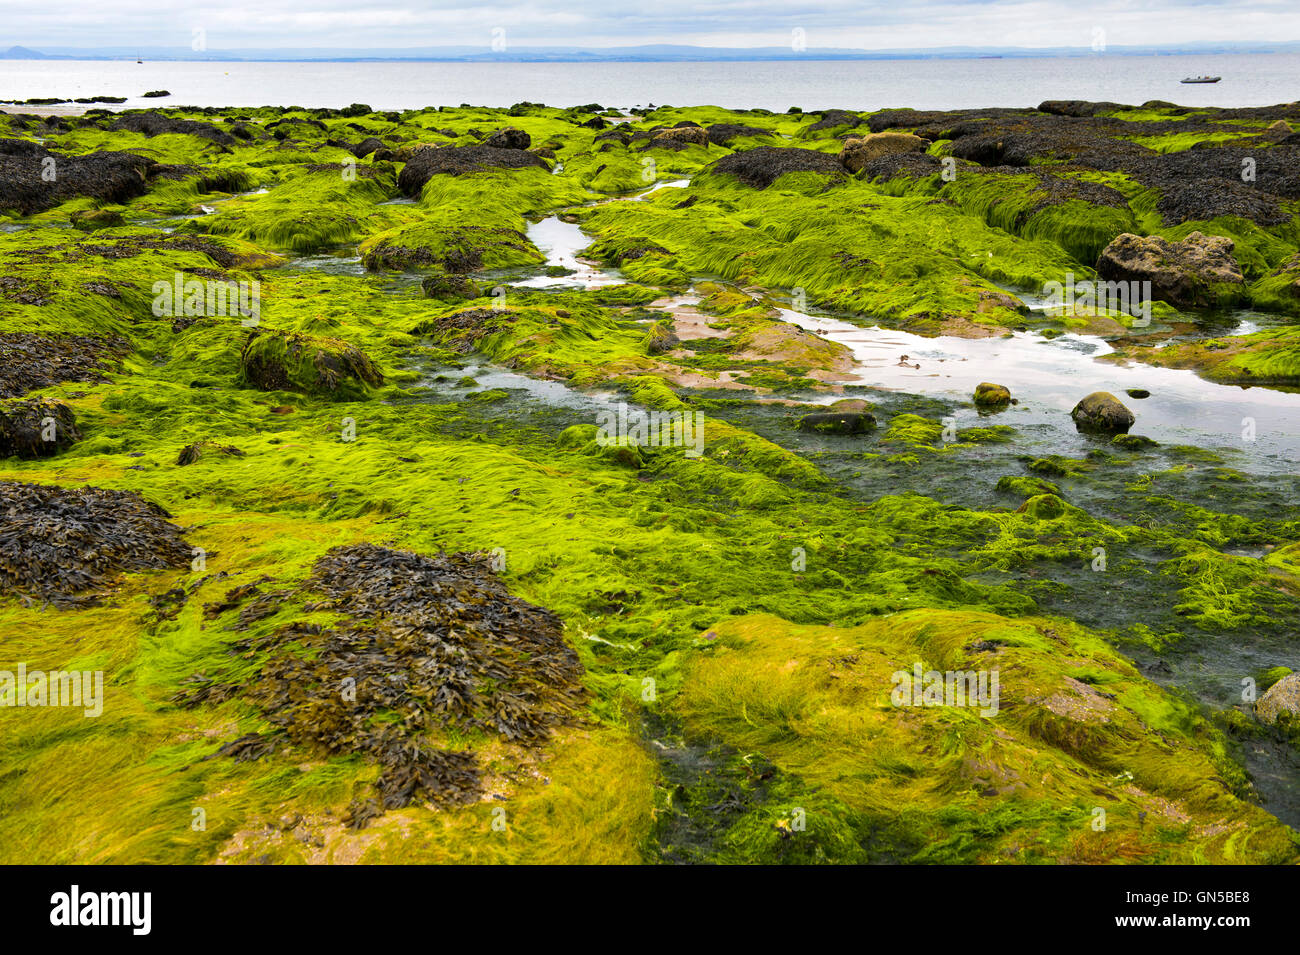 Submerged algae on coastal rocks during low tide in the Largo Bay, Lower Largo, Fife, Scotland, United Kingdom Stock Photo